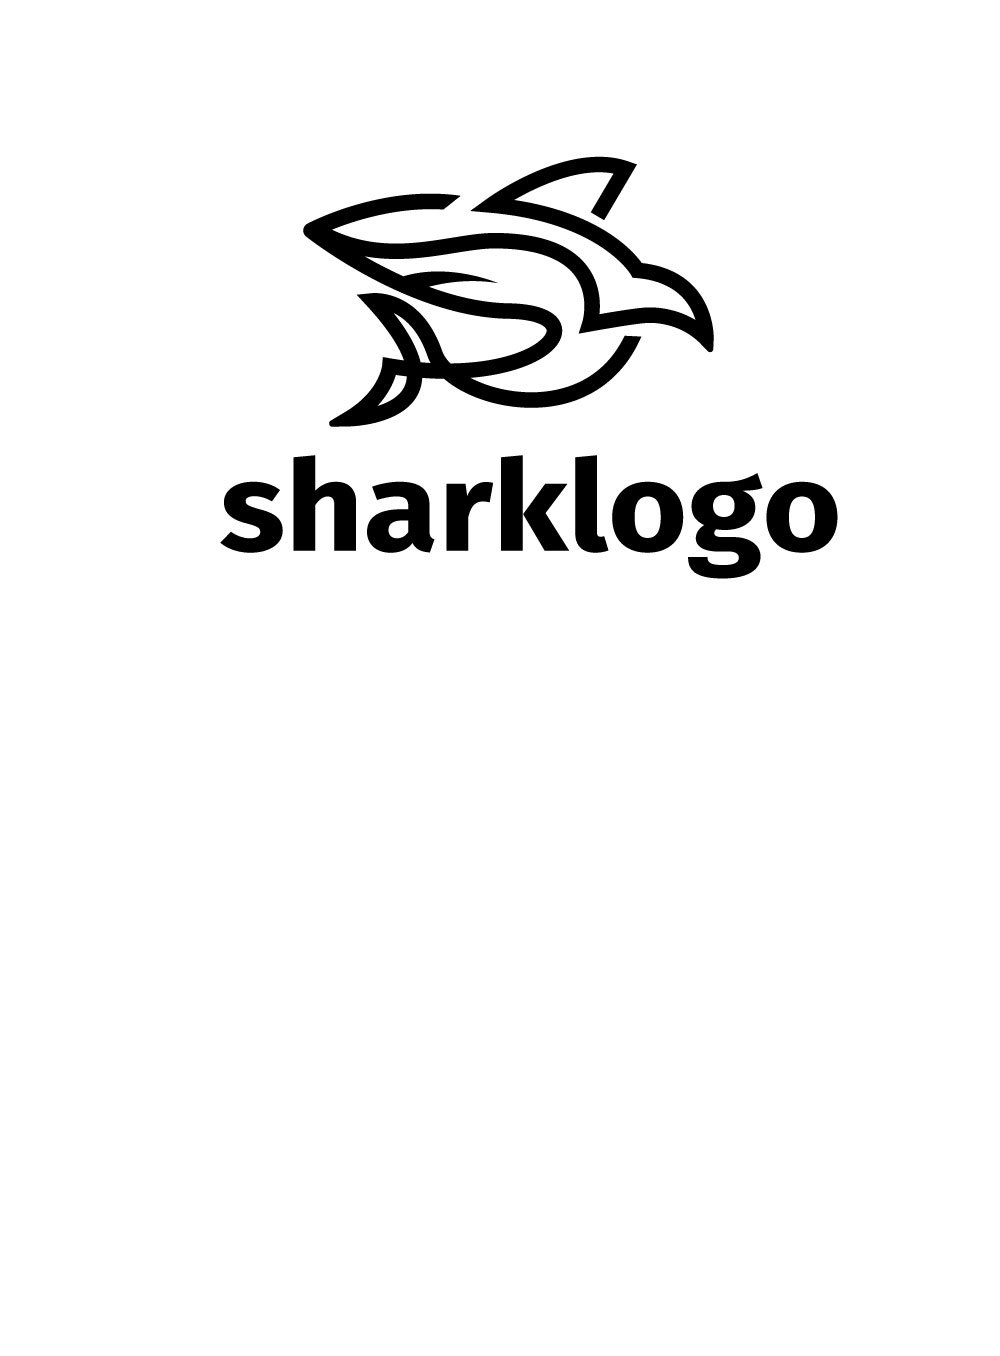 shark Logo cover image.